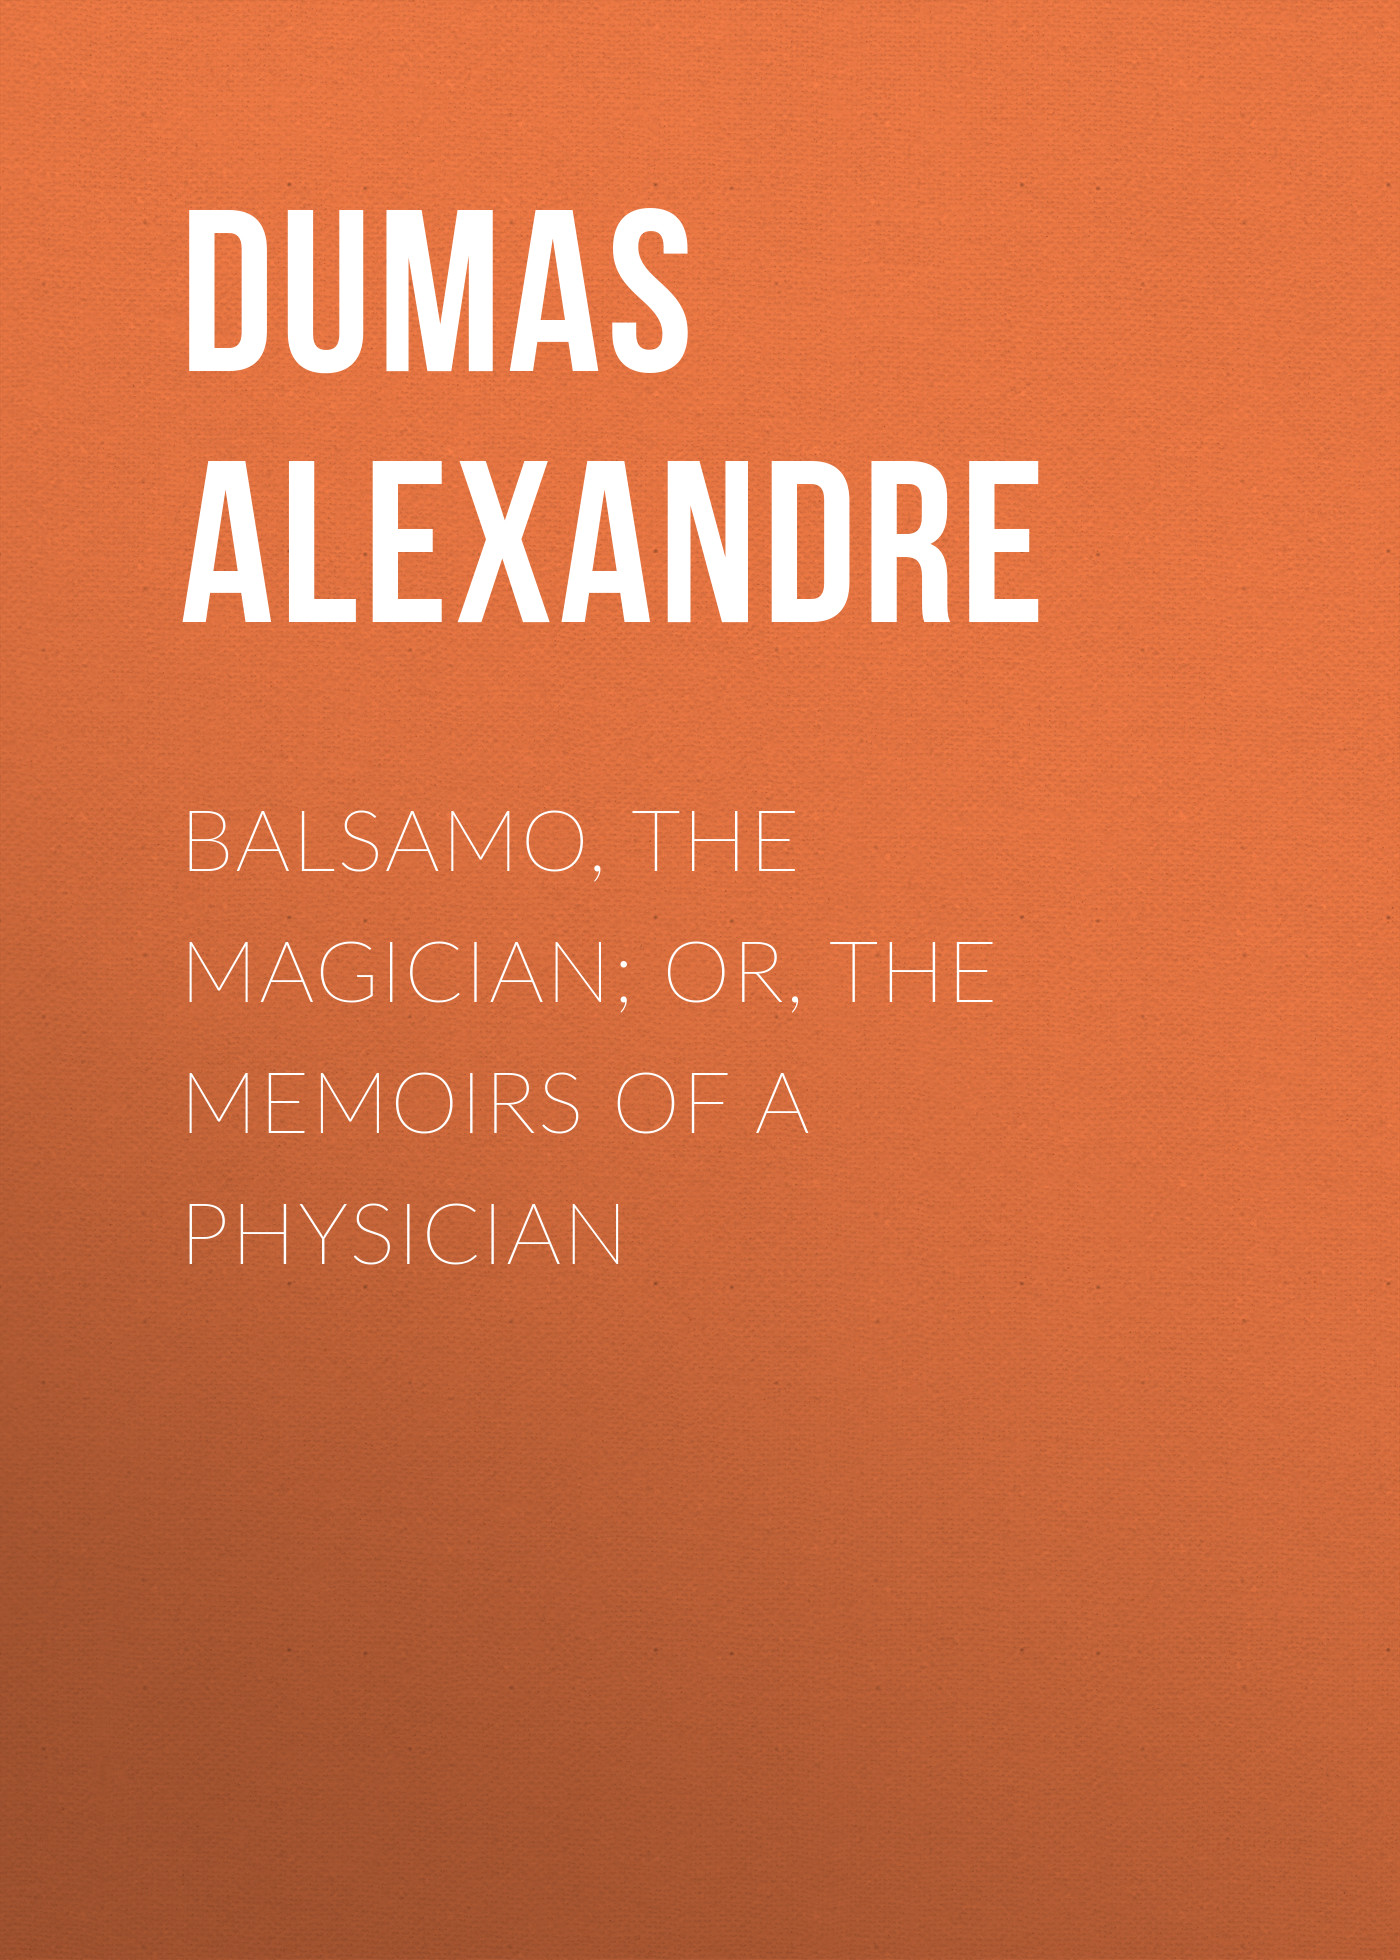 Книга Balsamo, the Magician; or, The Memoirs of a Physician из серии , созданная Alexandre Dumas, может относится к жанру Зарубежная старинная литература, Зарубежная классика. Стоимость электронной книги Balsamo, the Magician; or, The Memoirs of a Physician с идентификатором 24619997 составляет 0 руб.